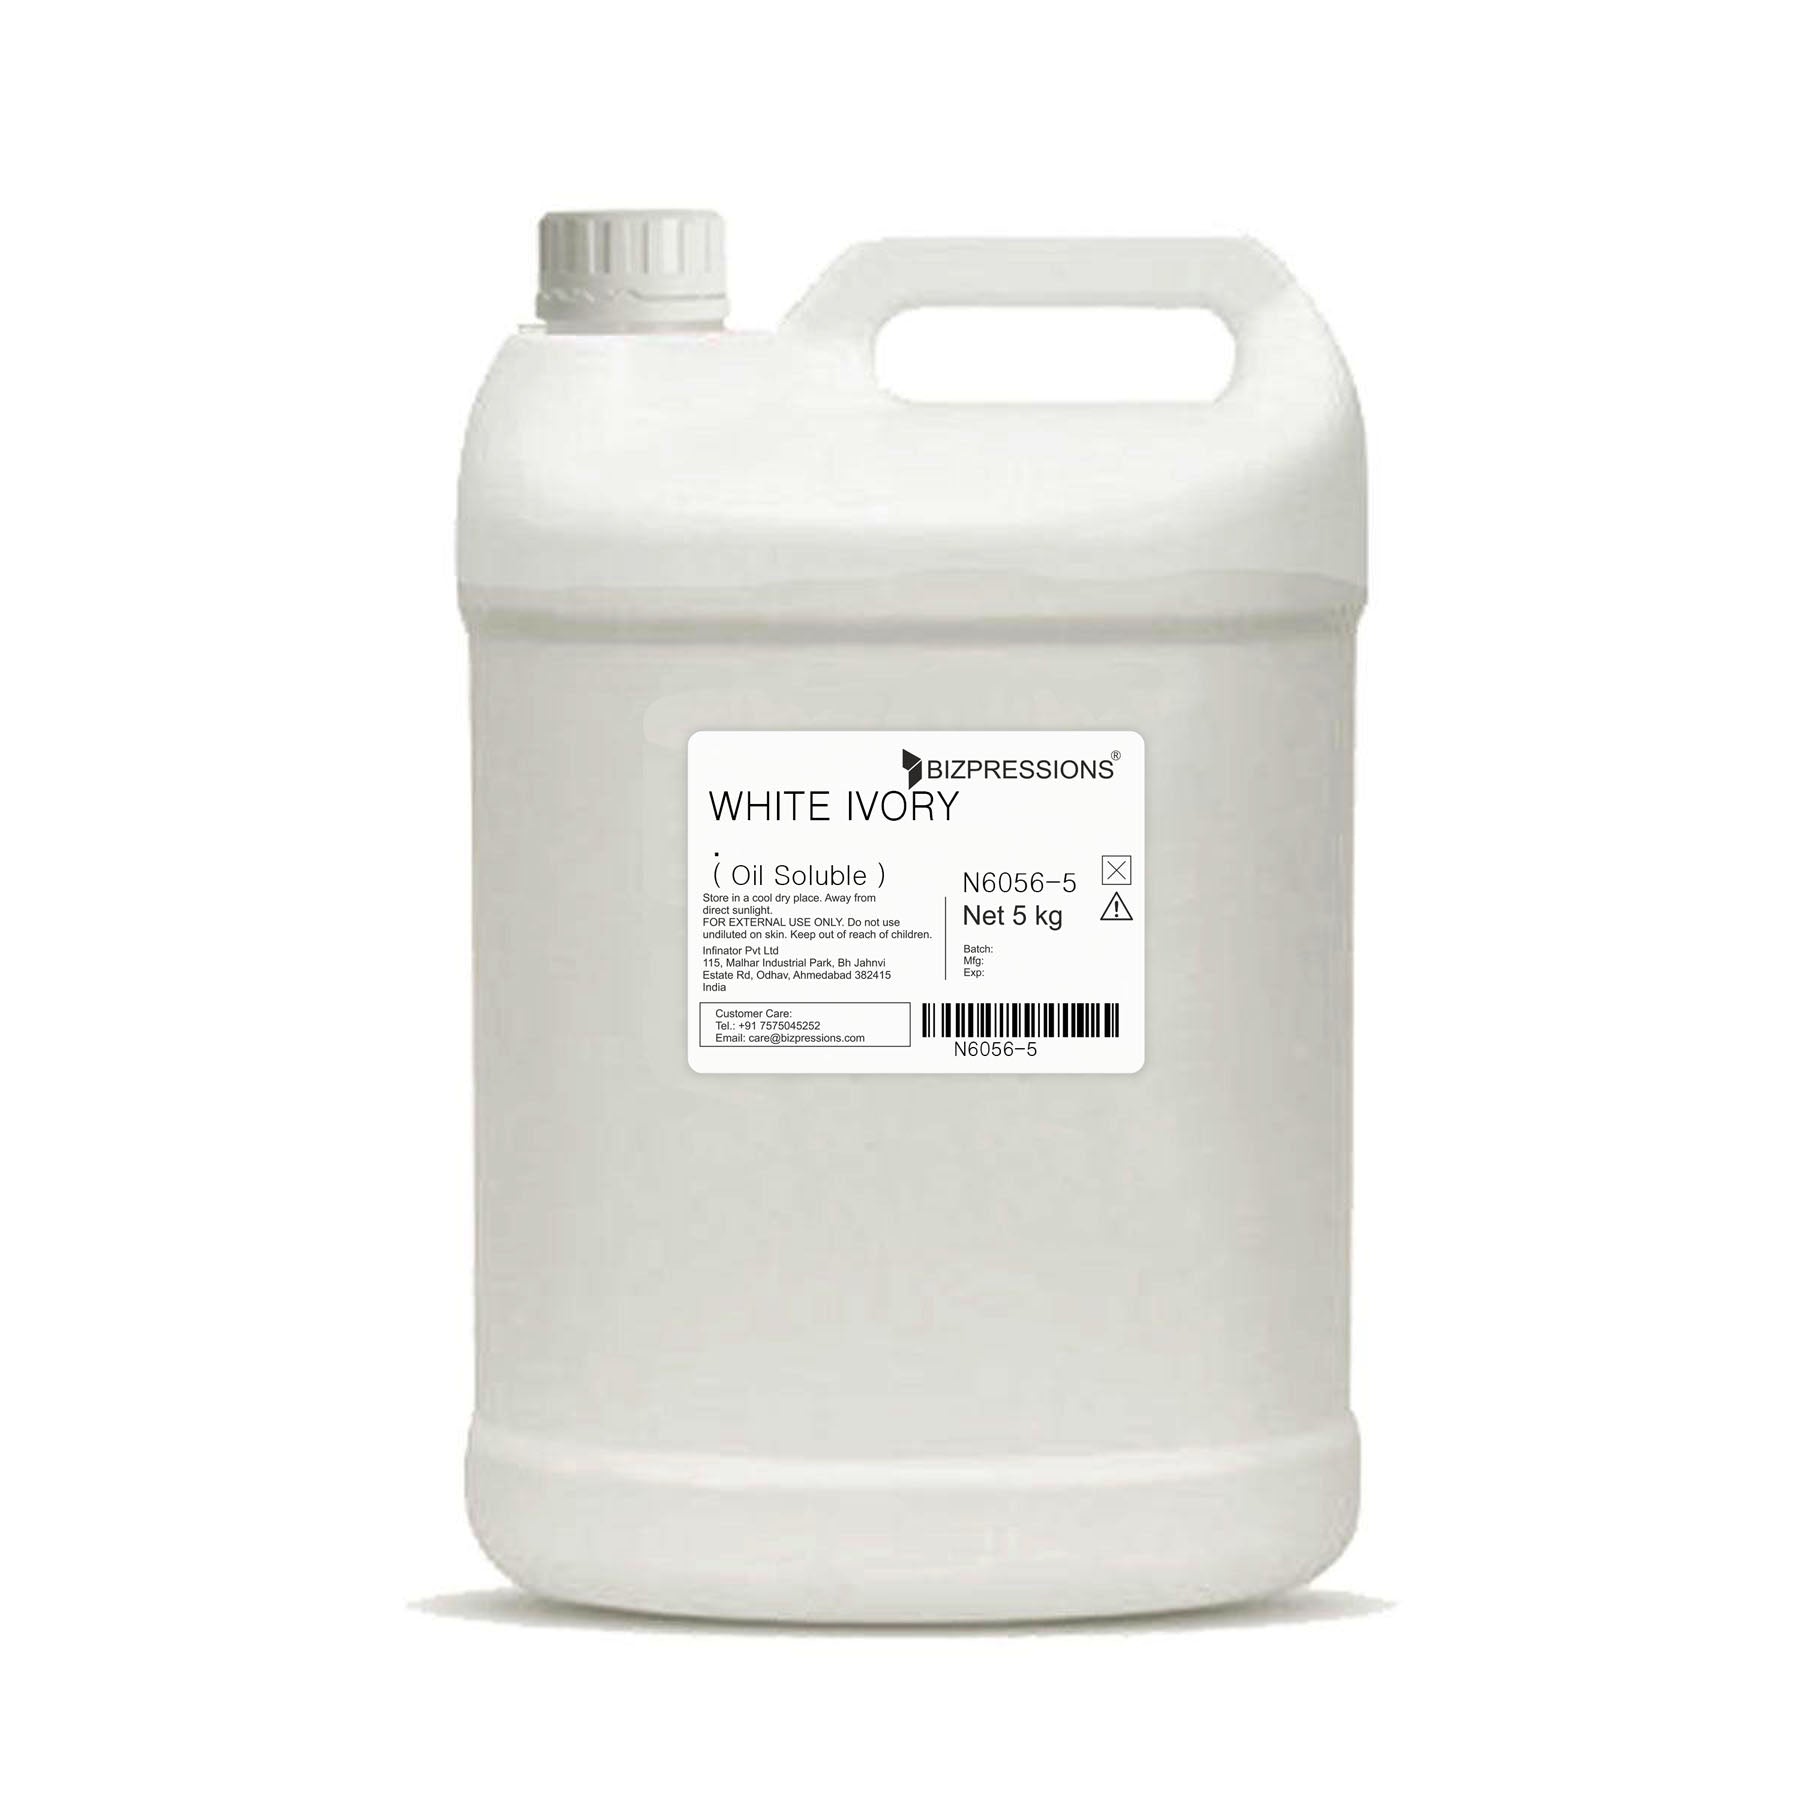 WHITE IVORY - Fragrance ( Oil Soluble ) - 5 kg